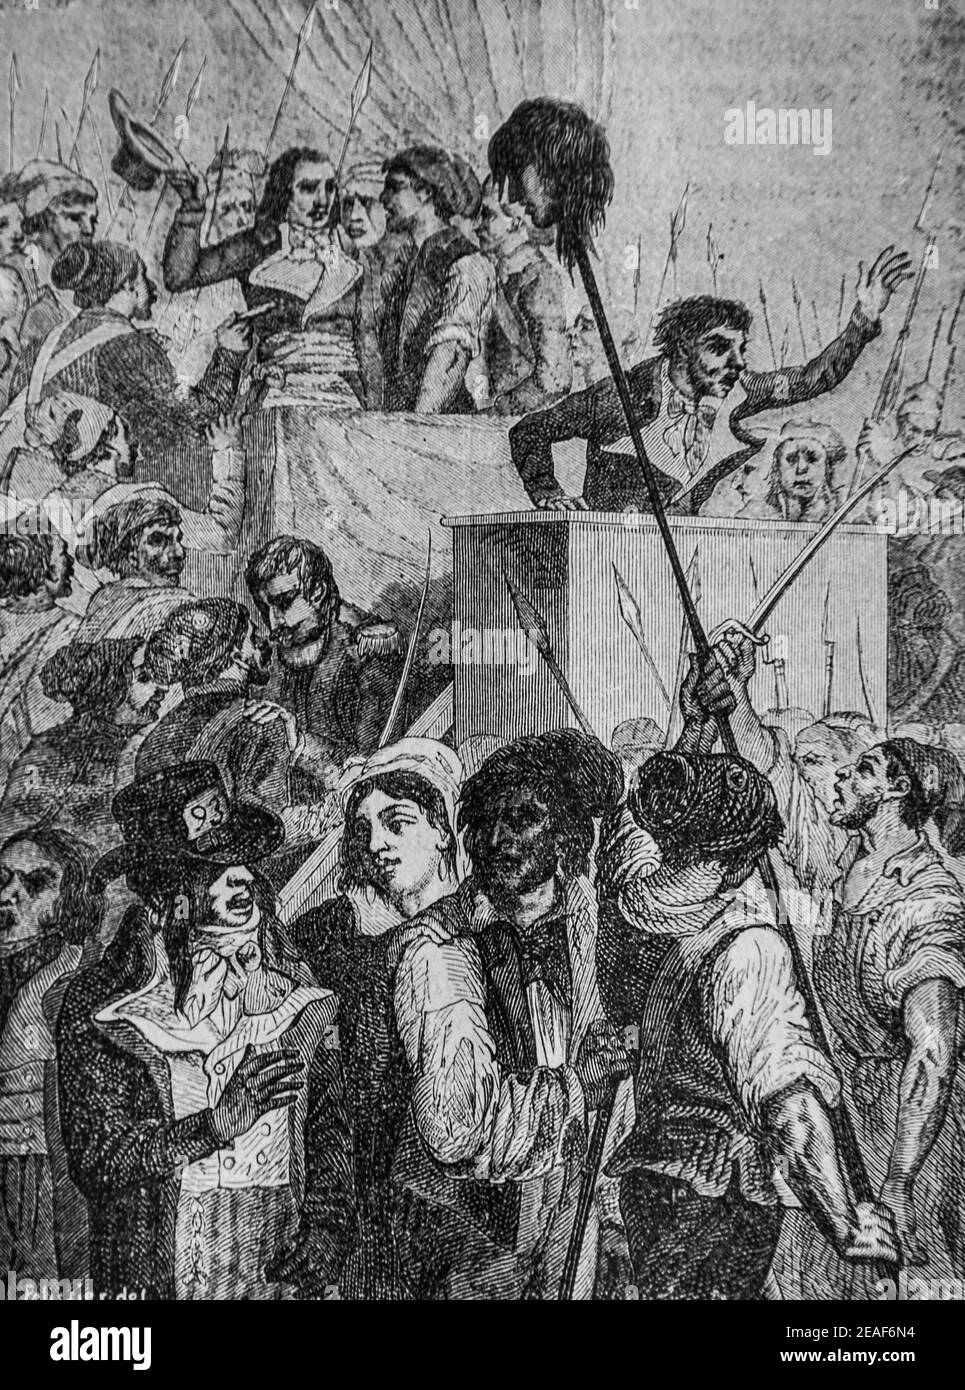 boissi d'anglas se decouvre devant la tete du depute feraud, 1792-1804,histoire de france par henri martin,editeur furne 1850 Stock Photo